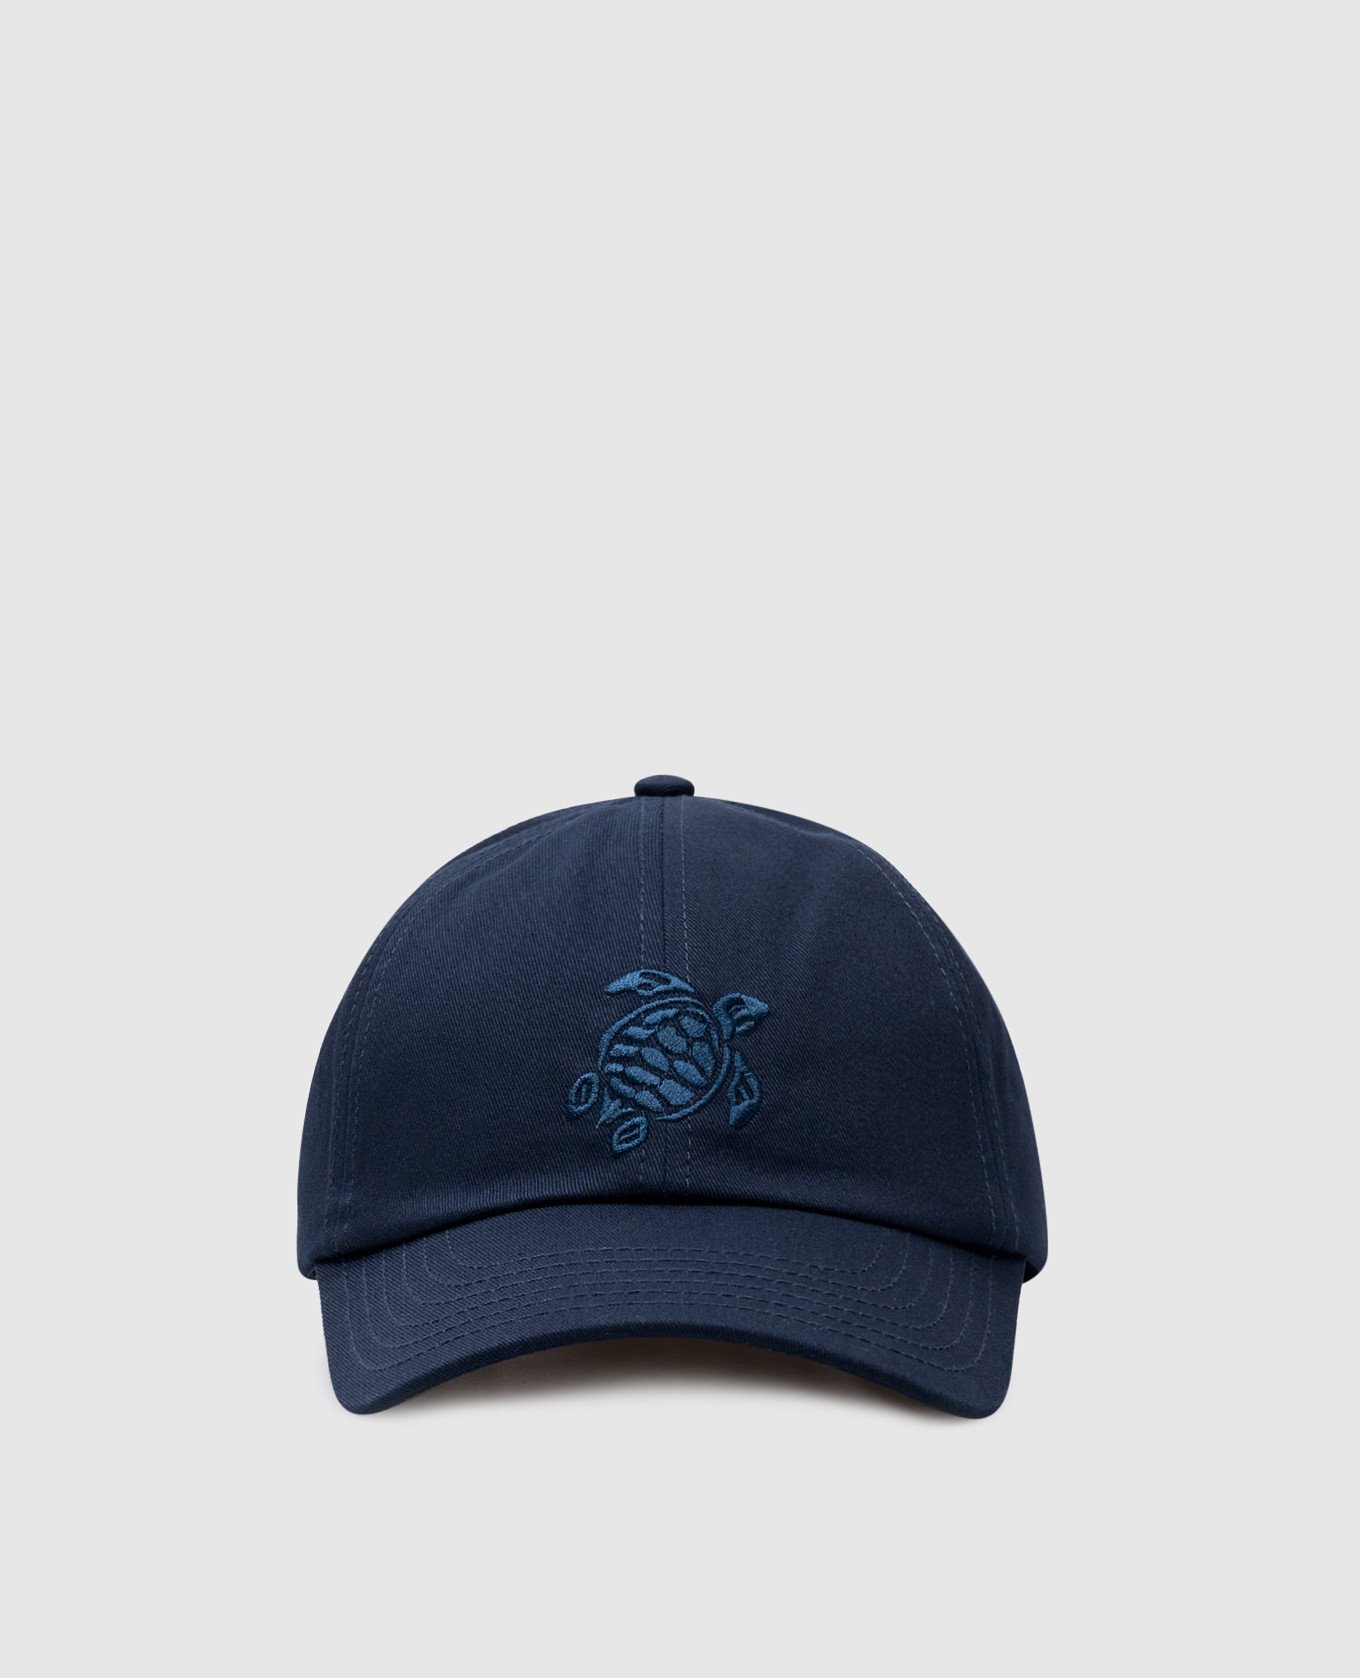 Capson blue cap with logo